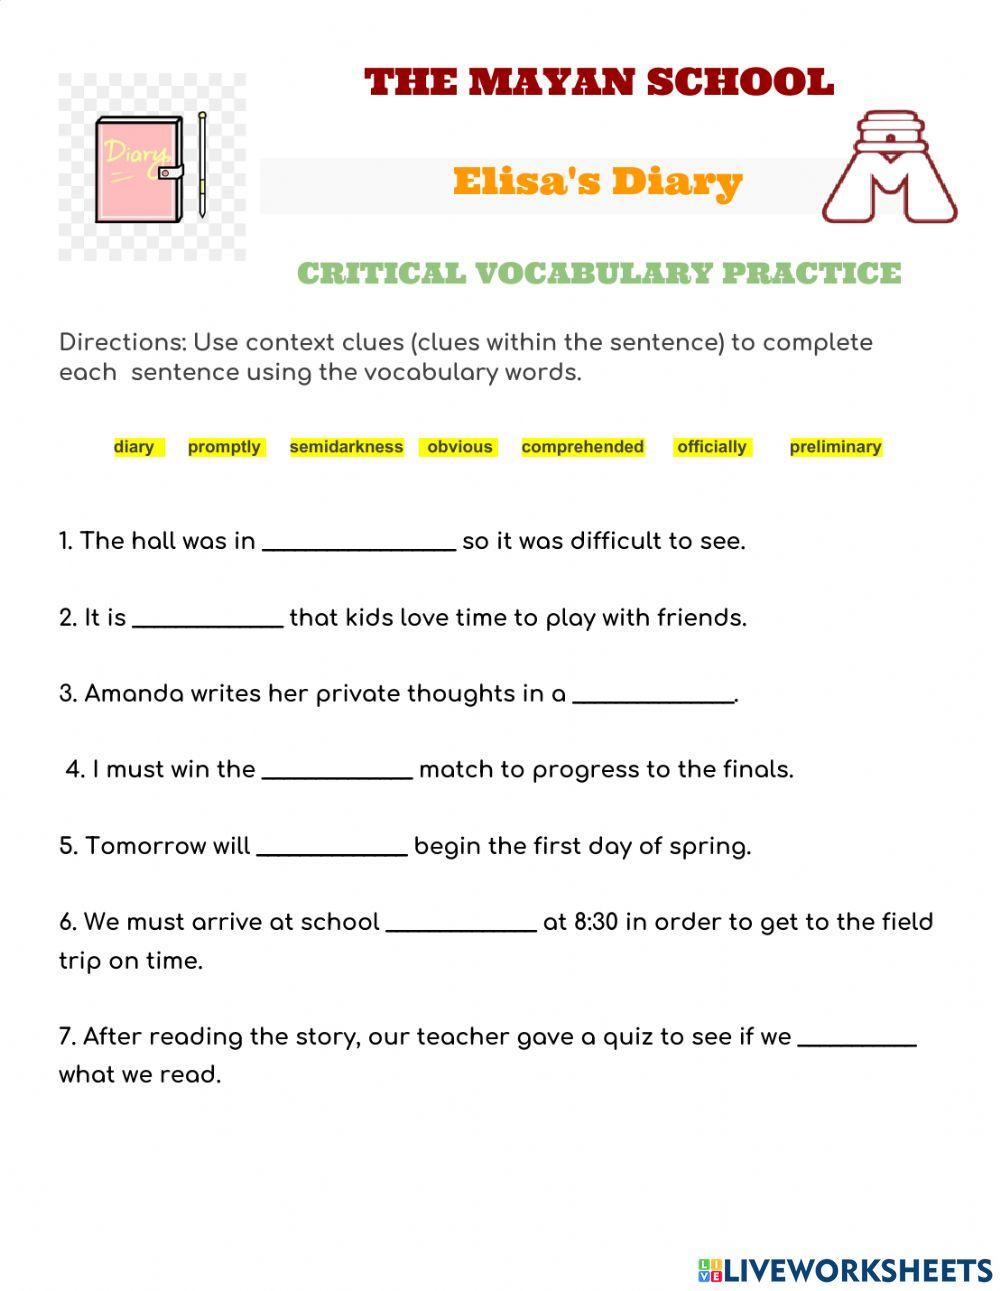 Elisas-s diary